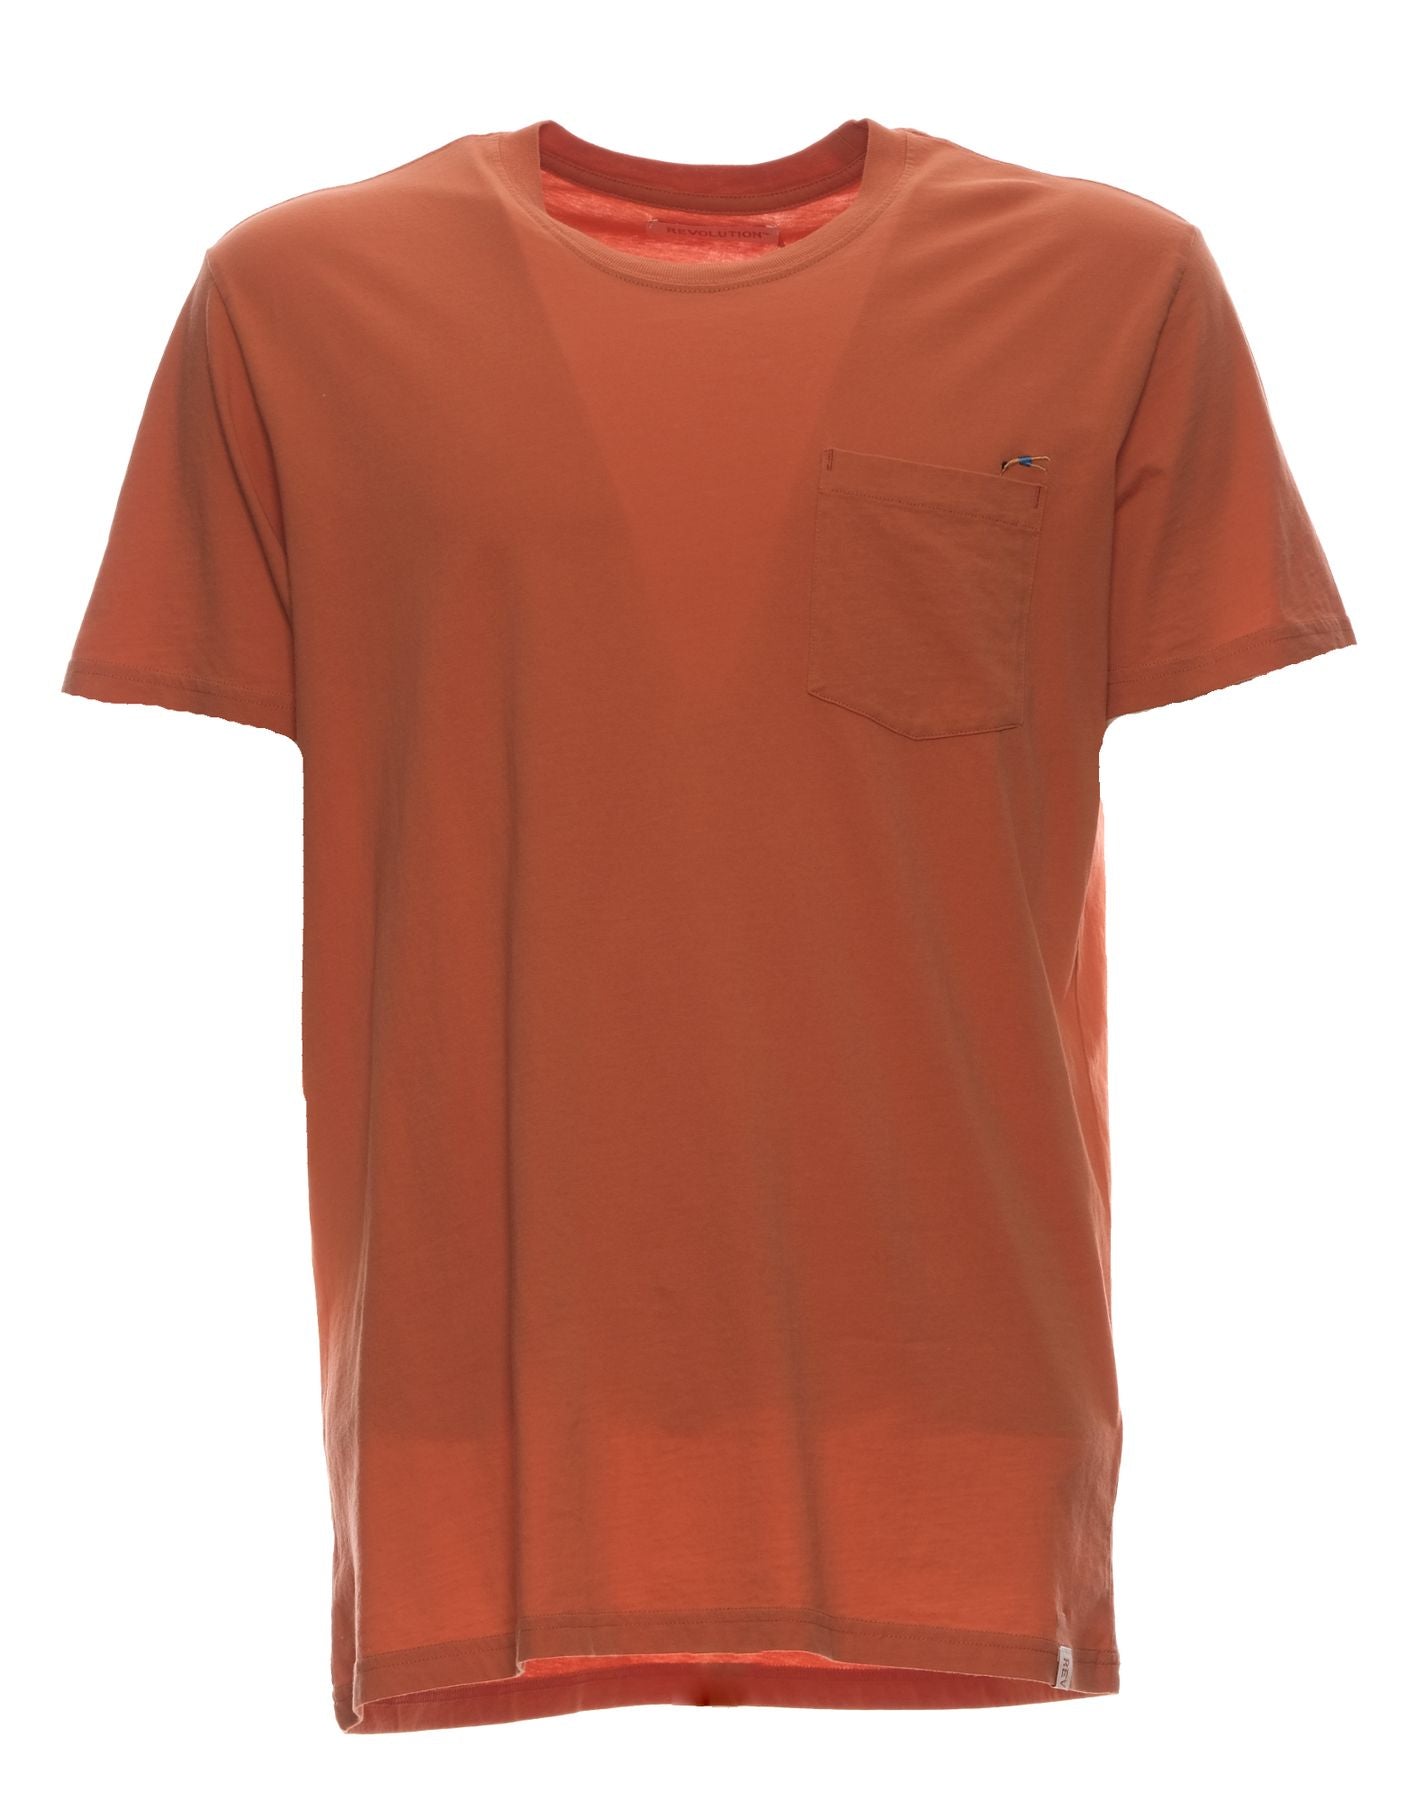 T-Shirt für Männer 1317 Leichte Orange Revolution